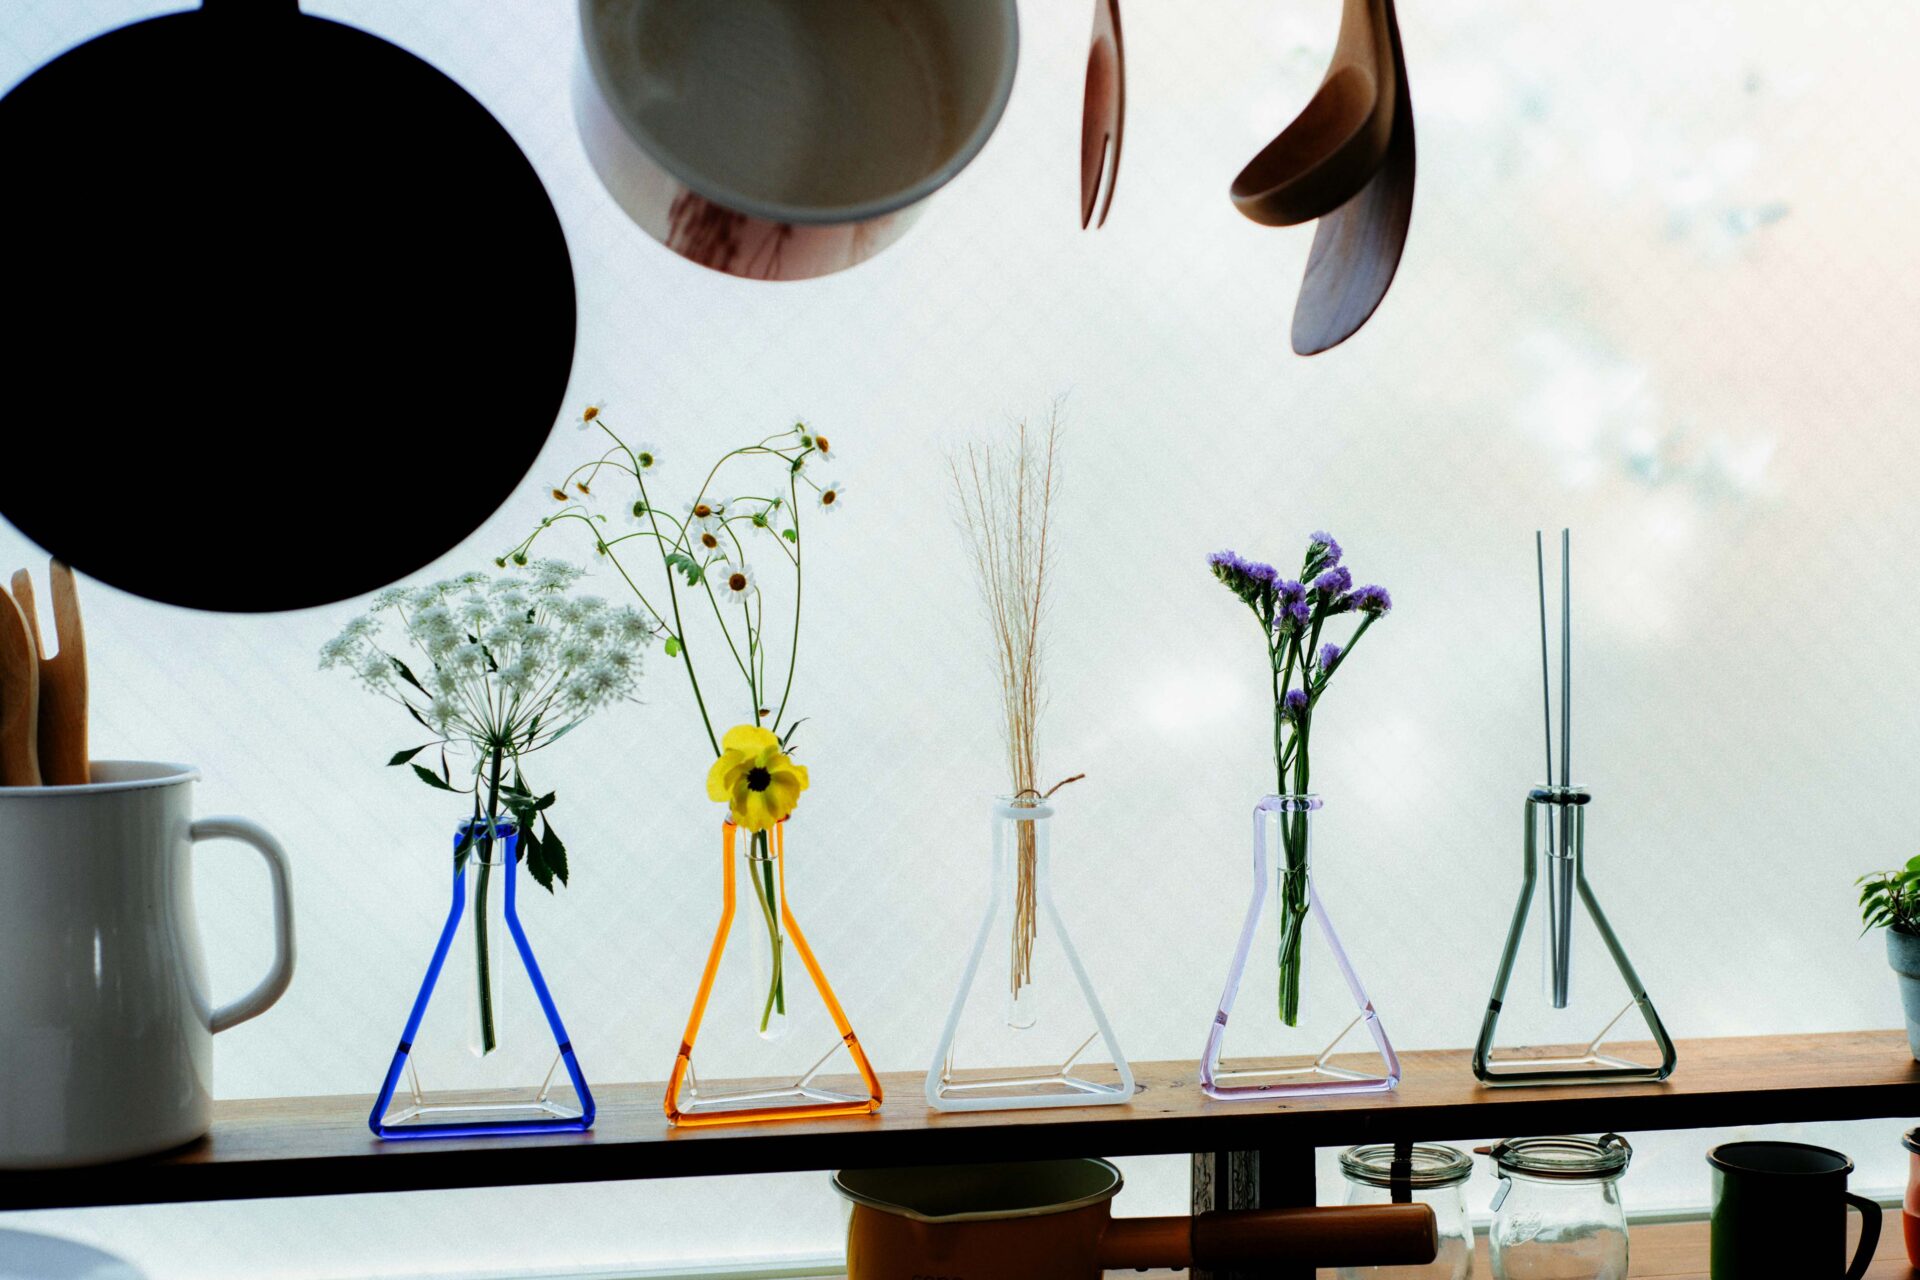 さんかくフラスコのかたちを色のついたガラスでかたどったデザインの花瓶「ガラスベースフレーム さんかく」が５つ、キッチンの窓辺に飾られている写真。それぞれに小さな花がいけられています